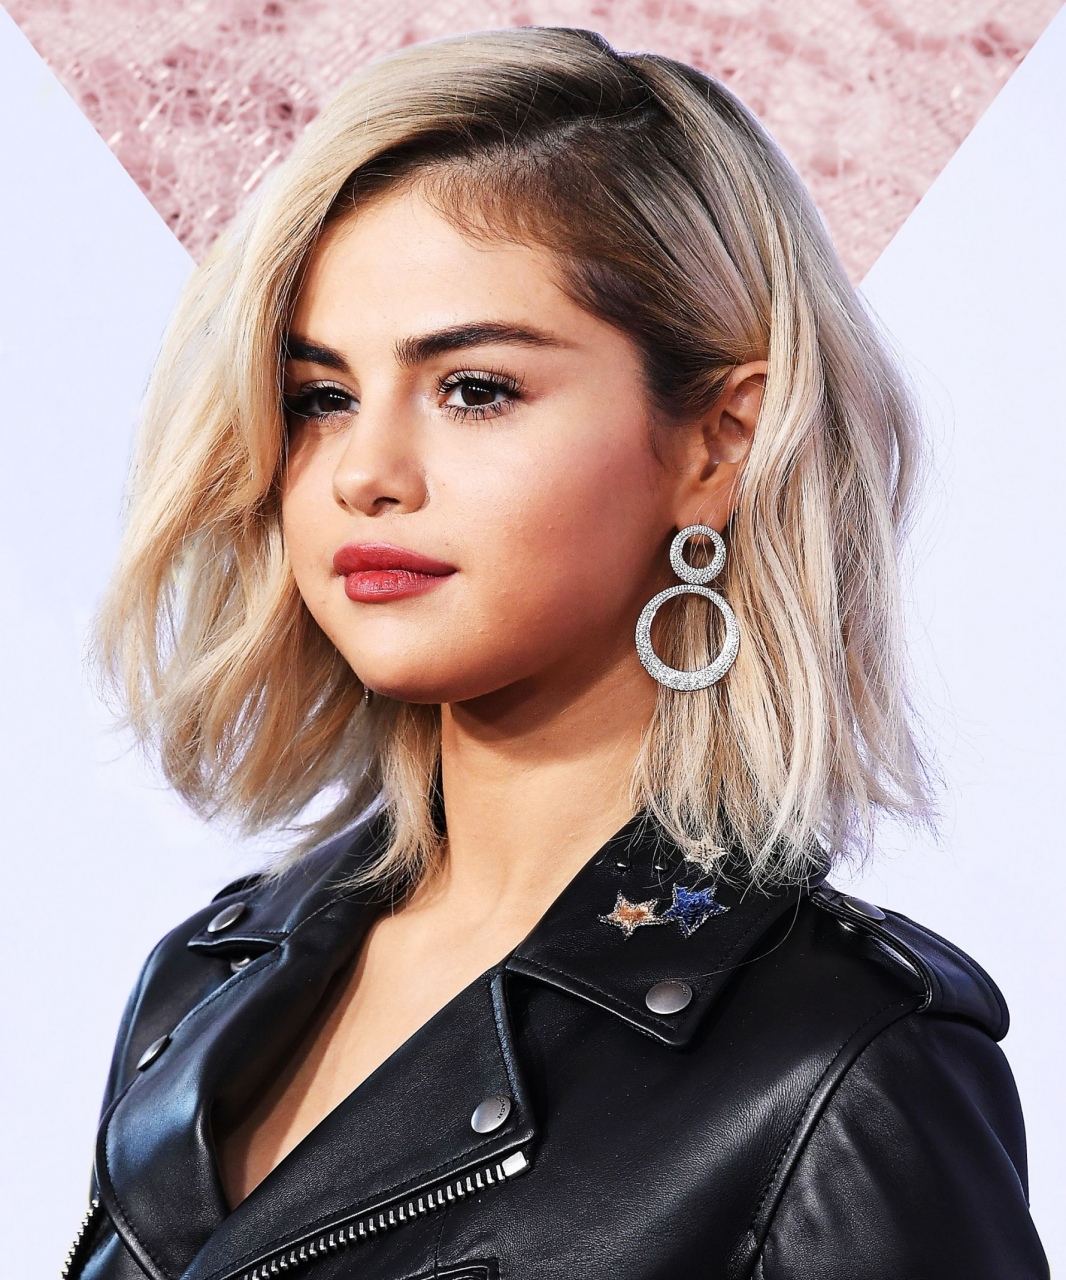 Selena Gomez cùng 5 kiểu tóc đẹp lấy cảm hứng từ cô | Đẹp365